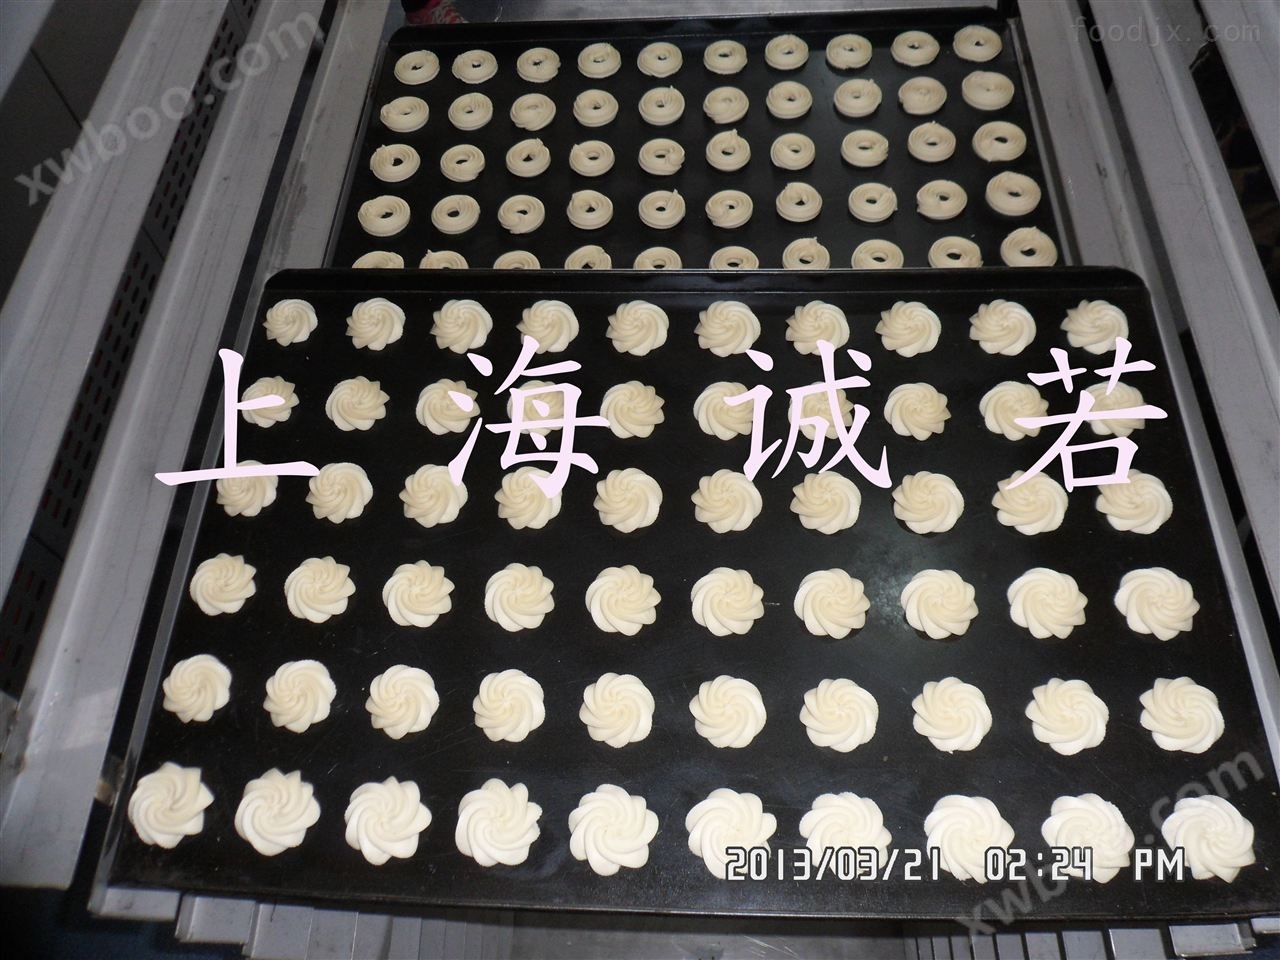 曲奇机生产厂家 上海诚若曲奇机 曲奇糕点机 曲奇饼干机 曲奇饼干生产线